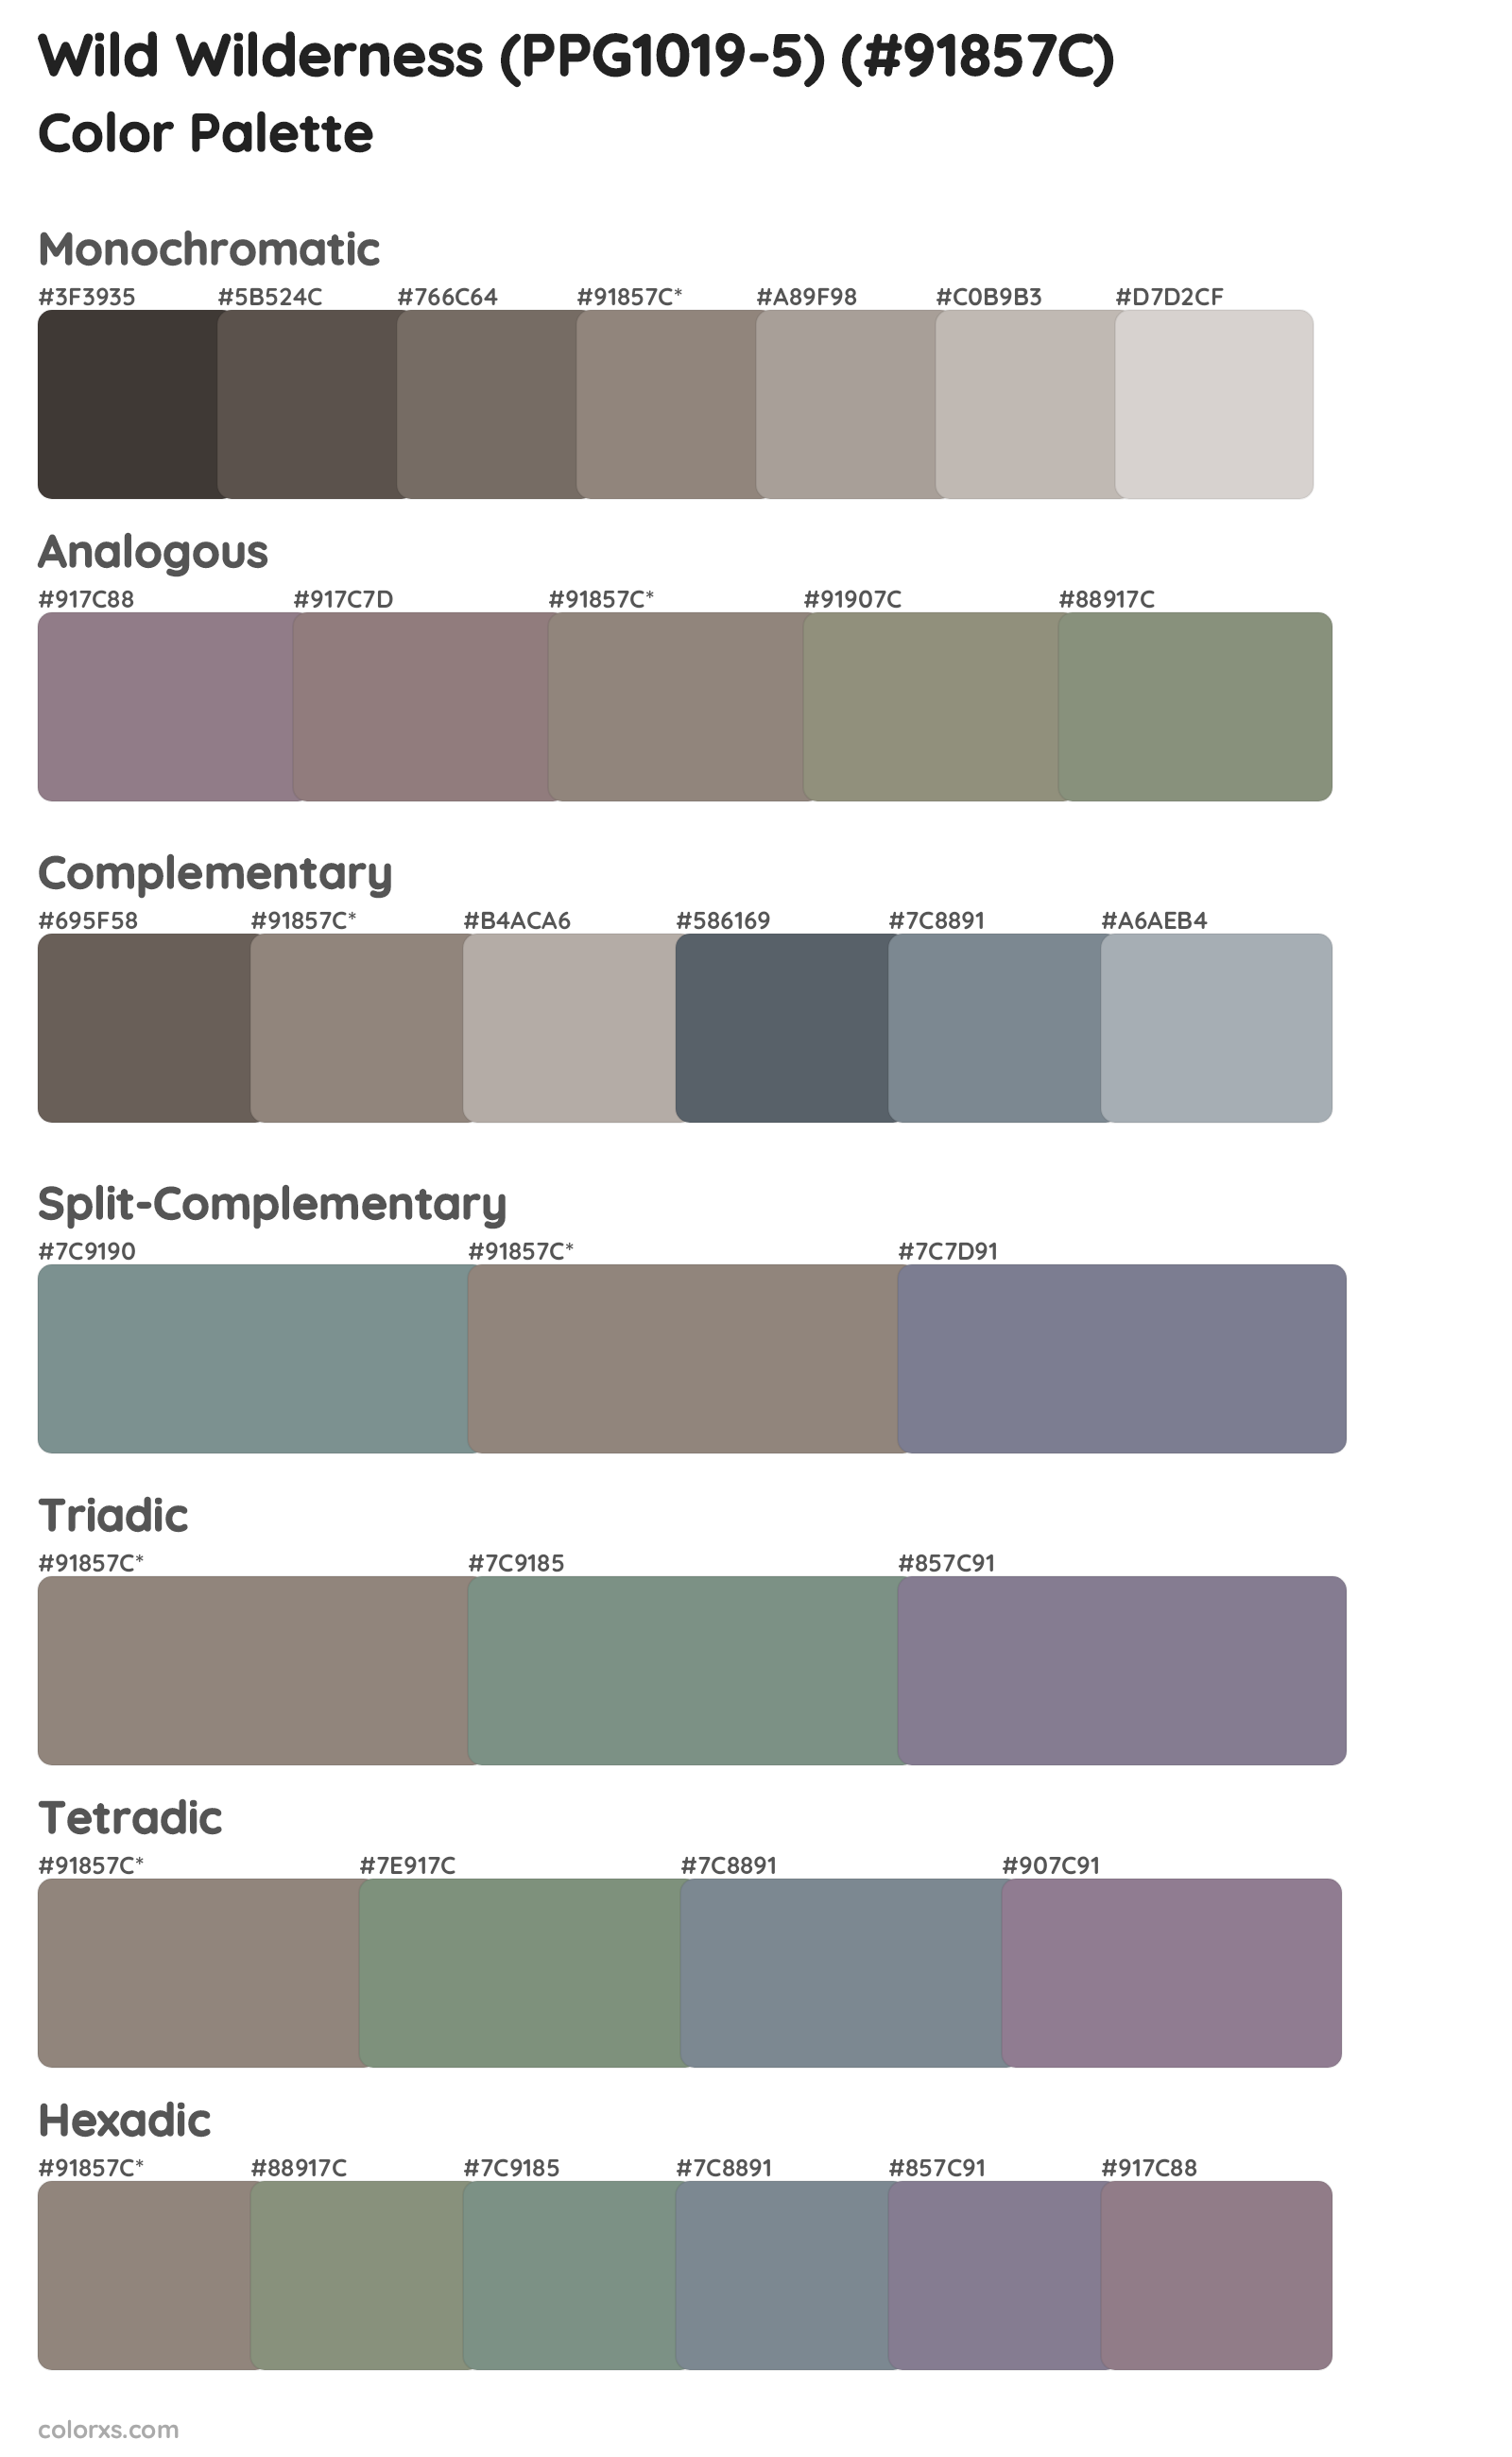 Wild Wilderness (PPG1019-5) Color Scheme Palettes